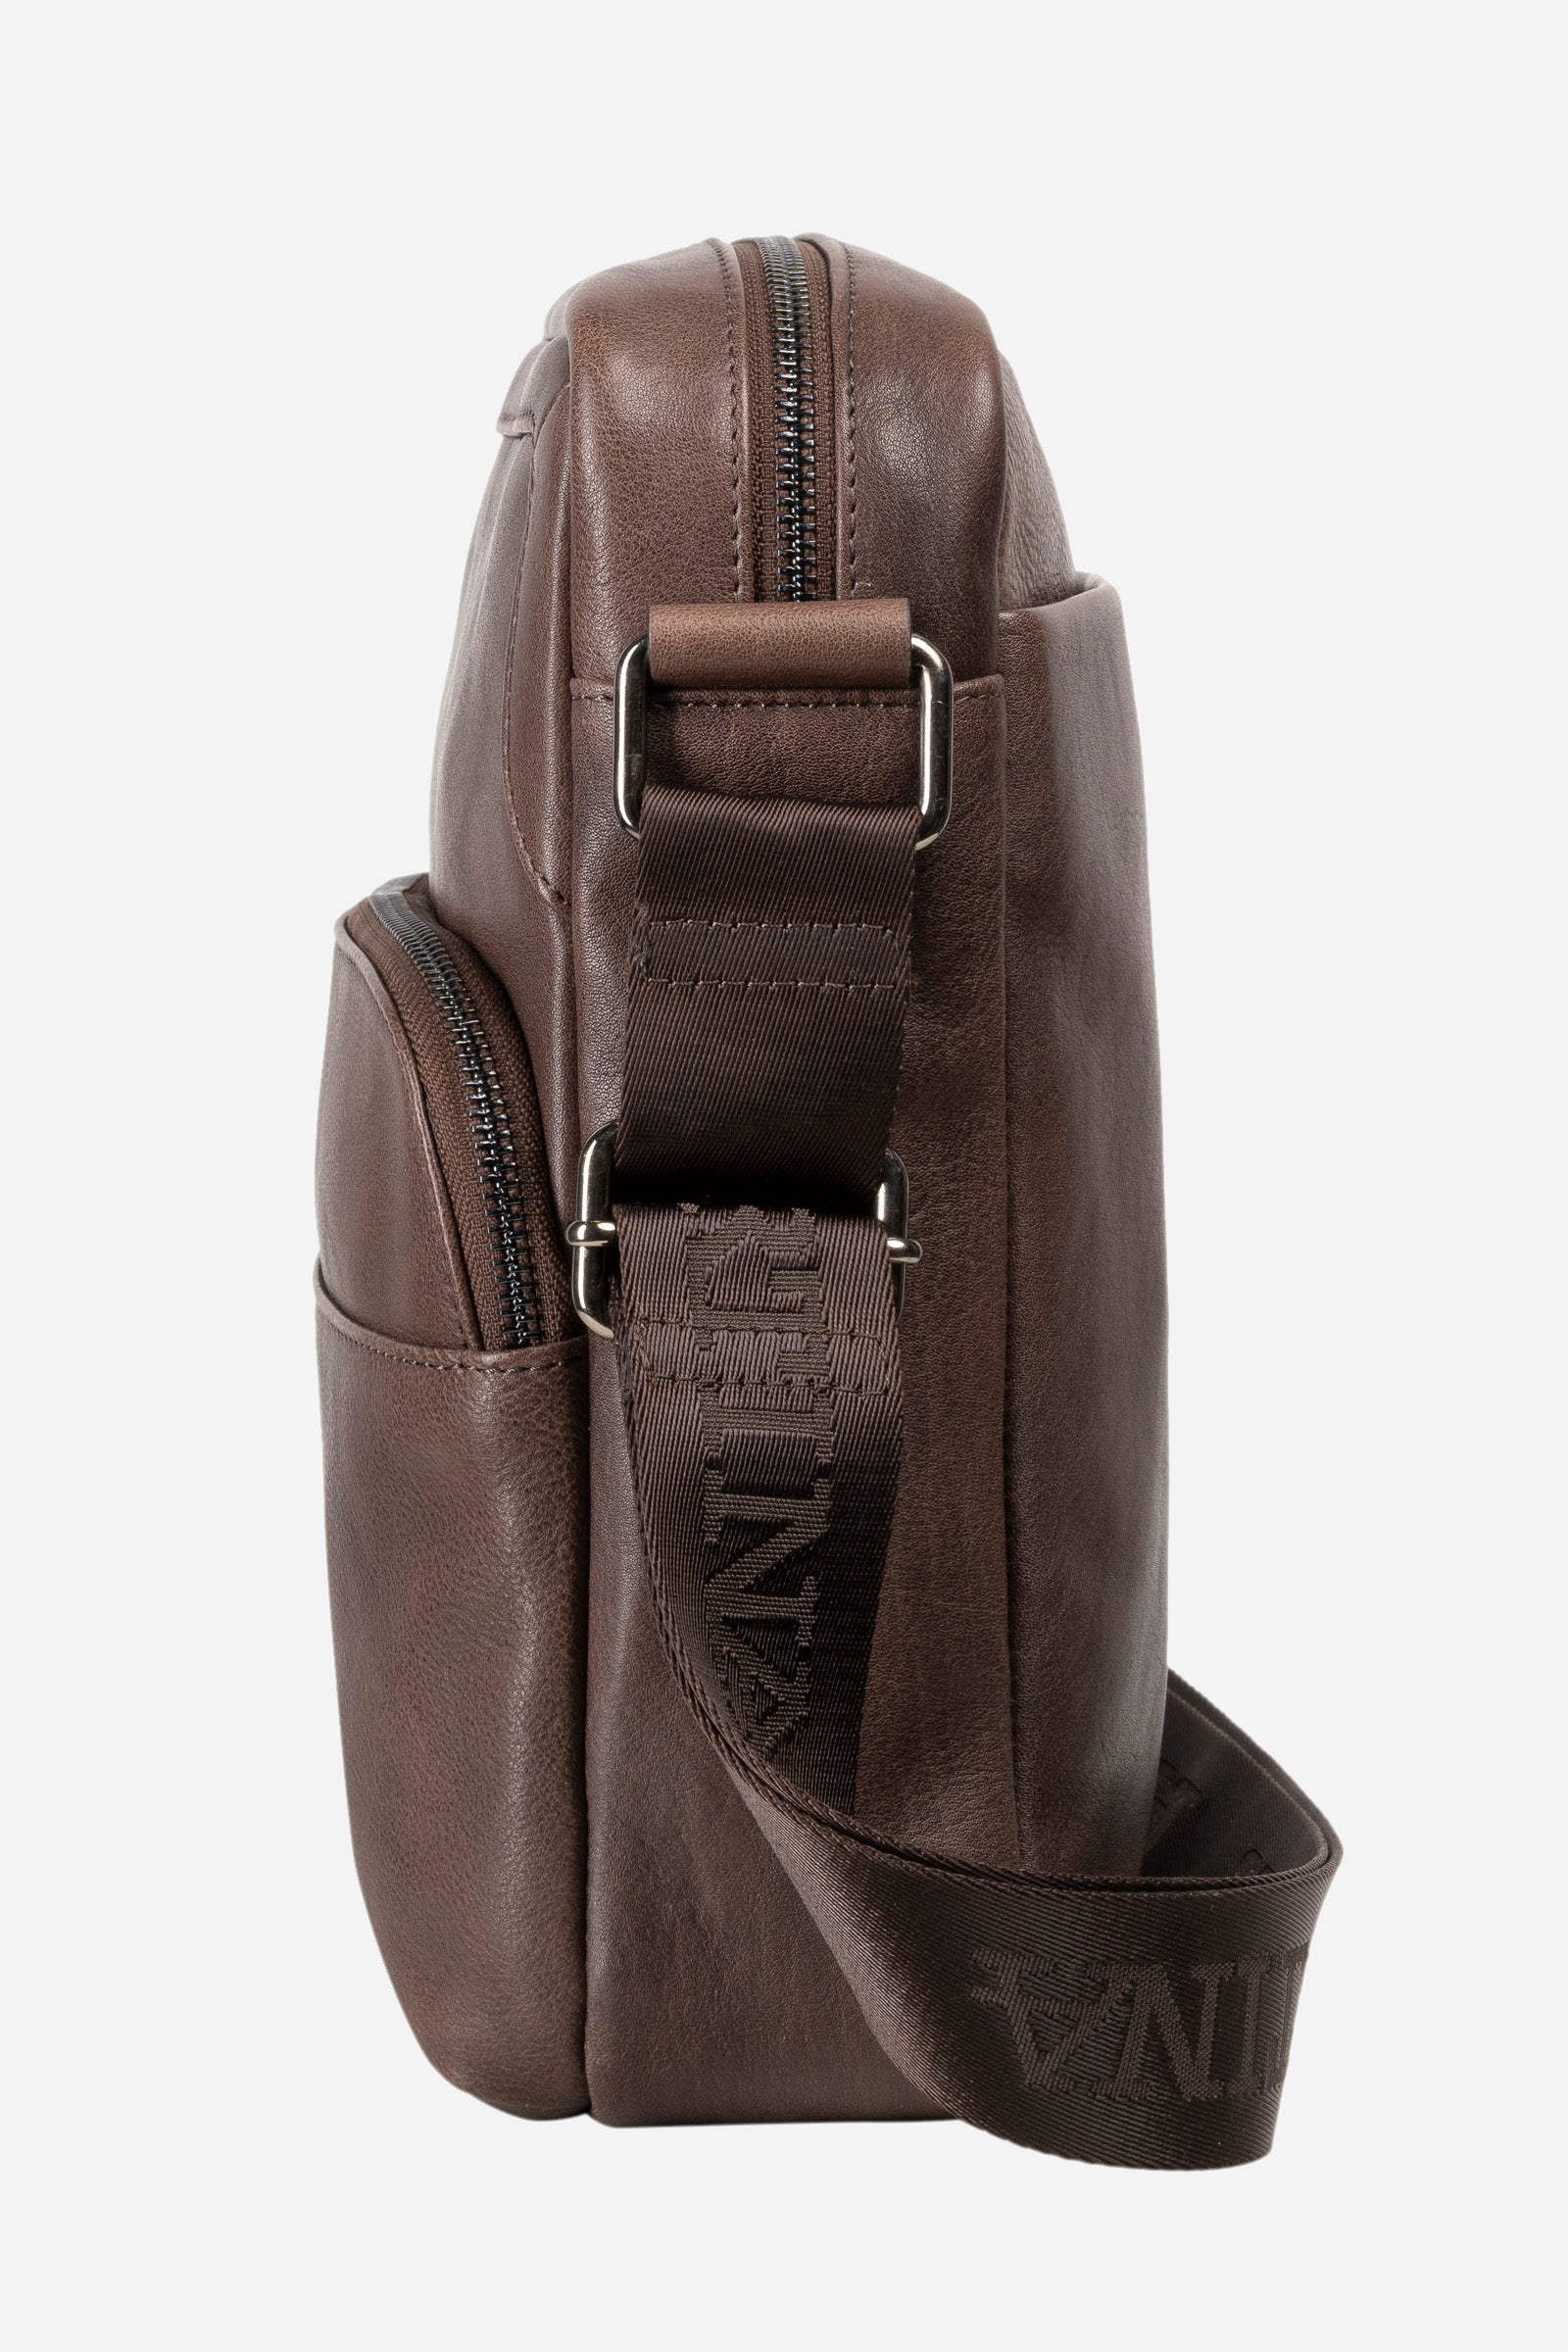 Men's leather bodybag - Miguel